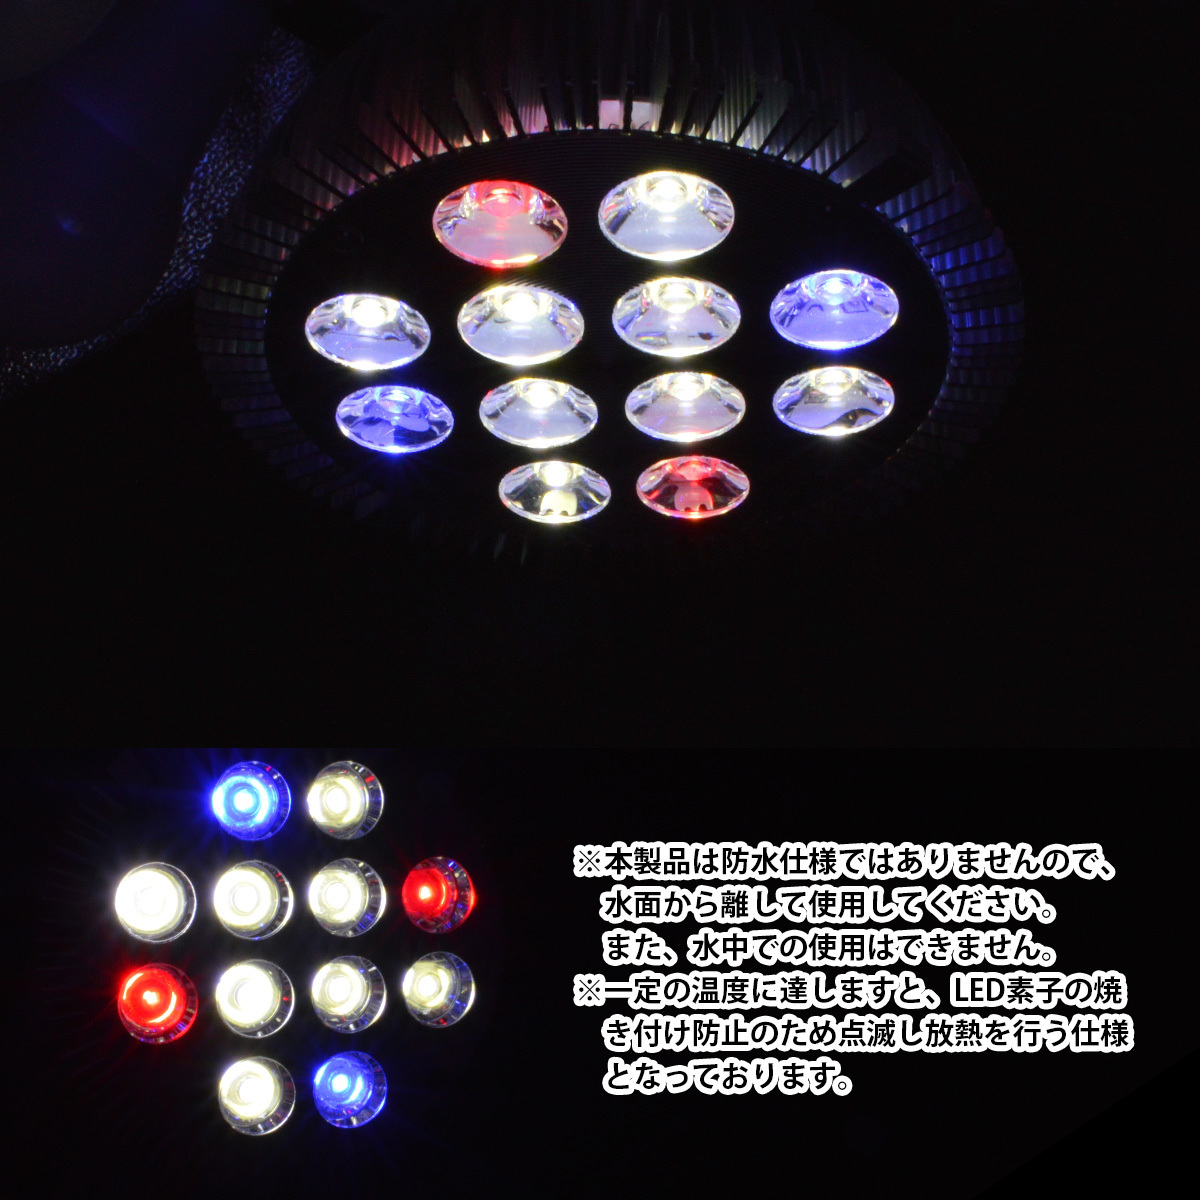 LED 電球 スポットライト 24W 2W×12 白8青2赤2 適切な価格 水槽 照明 植物育成 電気 LEDスポットライト 水草 E26 サンゴ  熱帯魚 観賞魚